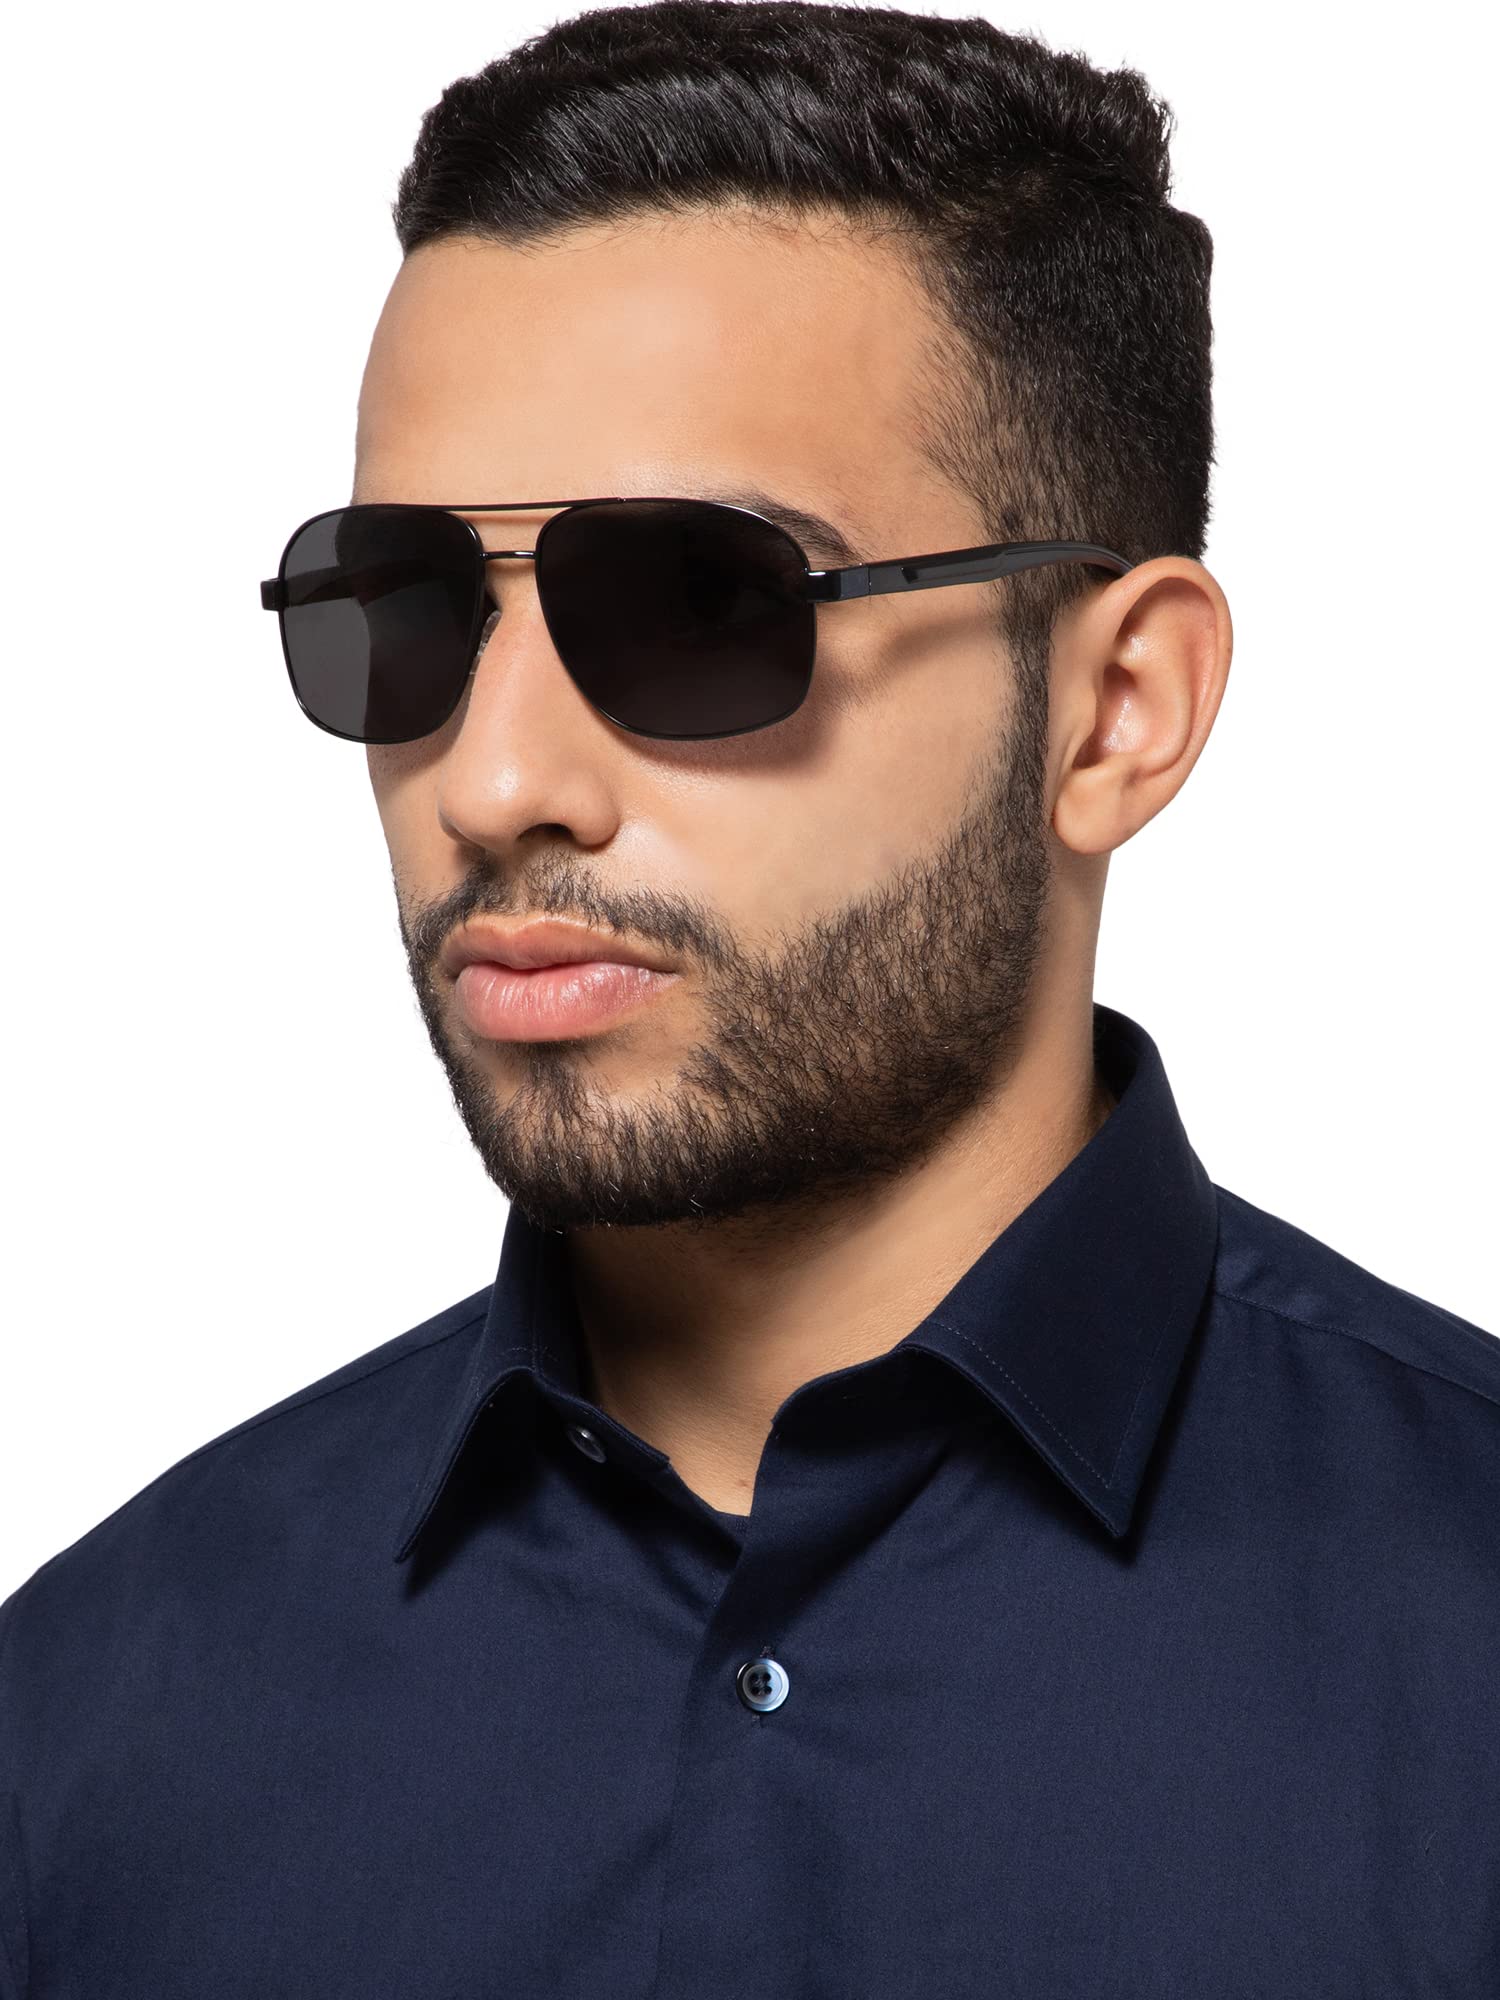 Intellilens Aviator UV Protected Sunglasses For Men & Women | Goggles for Men & Women (Black) (65-14-140)